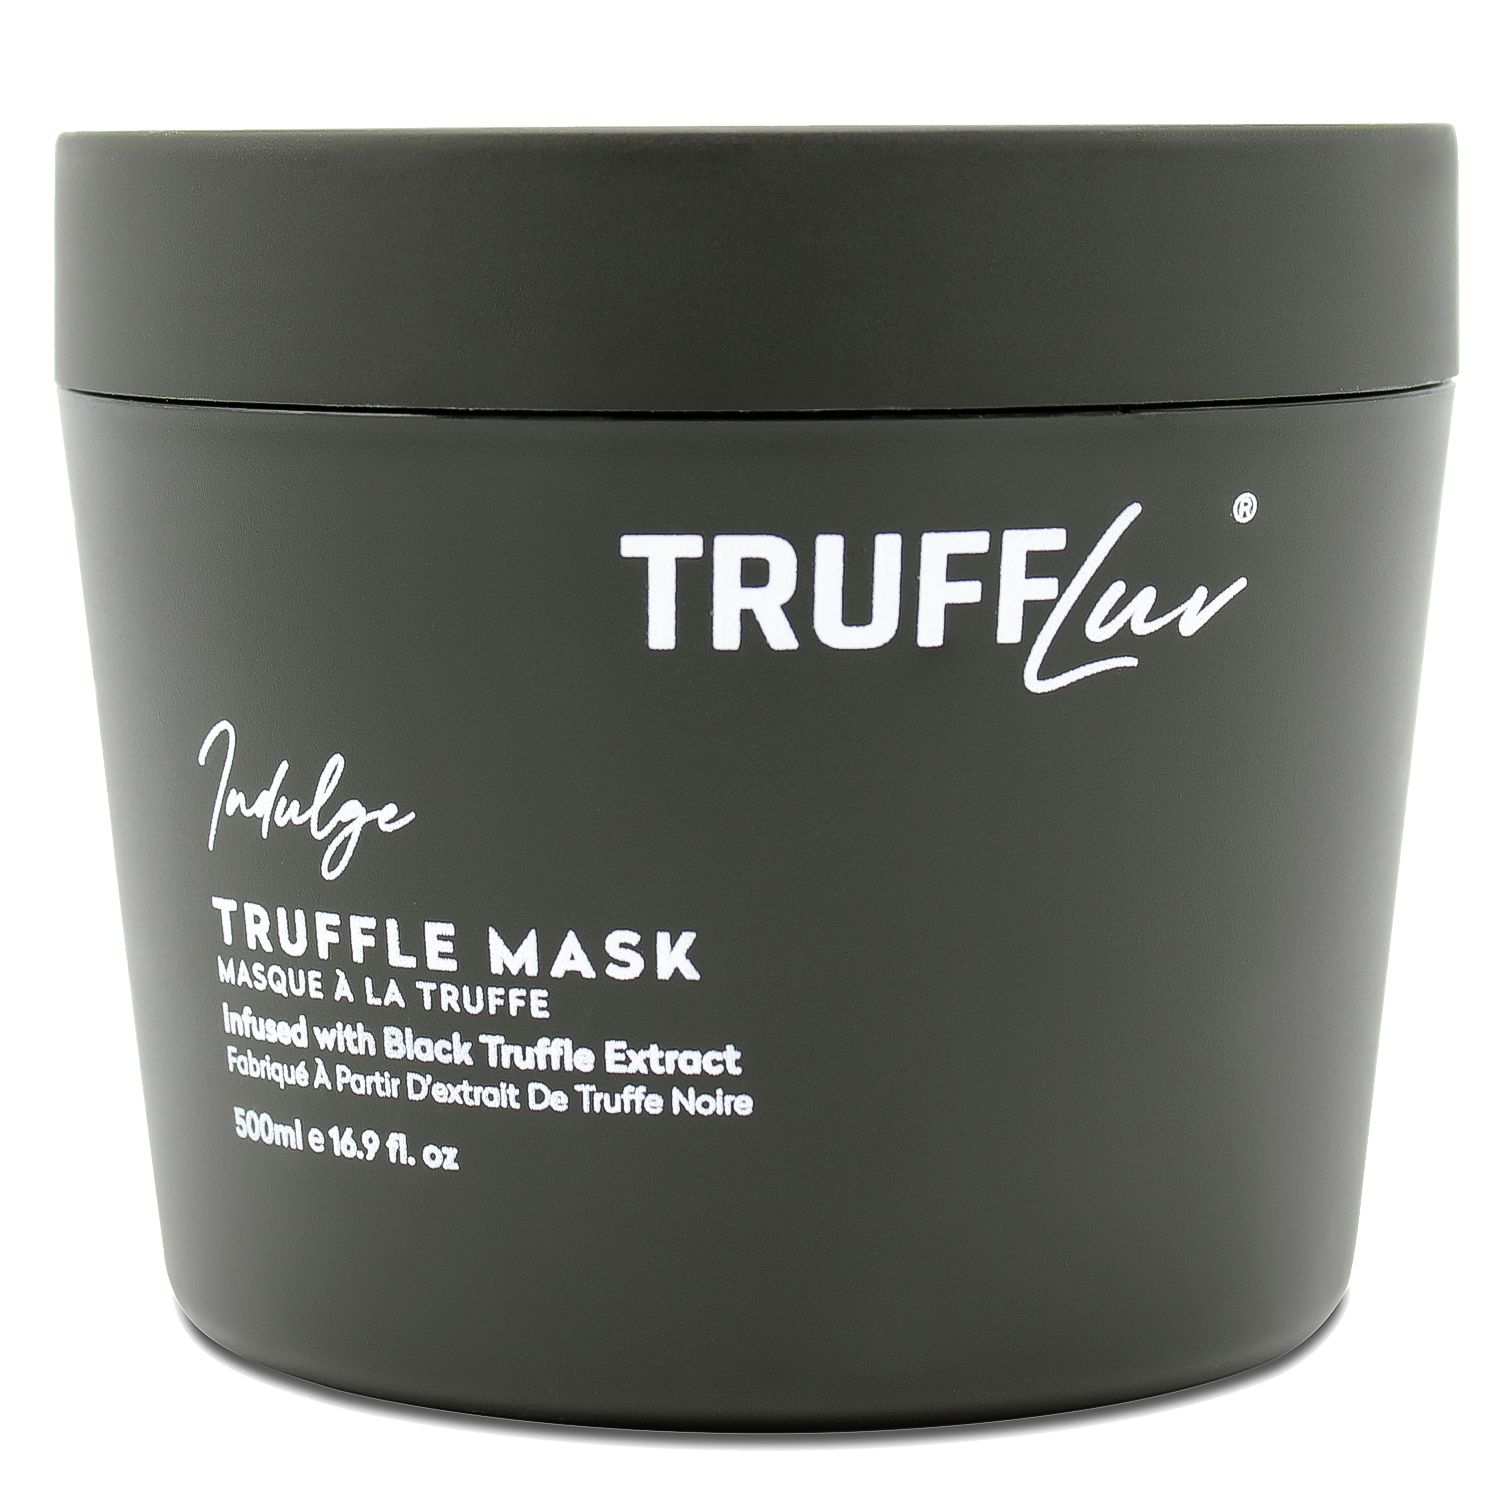 TruffLuv INDULGE Truffle Mask 500 ml